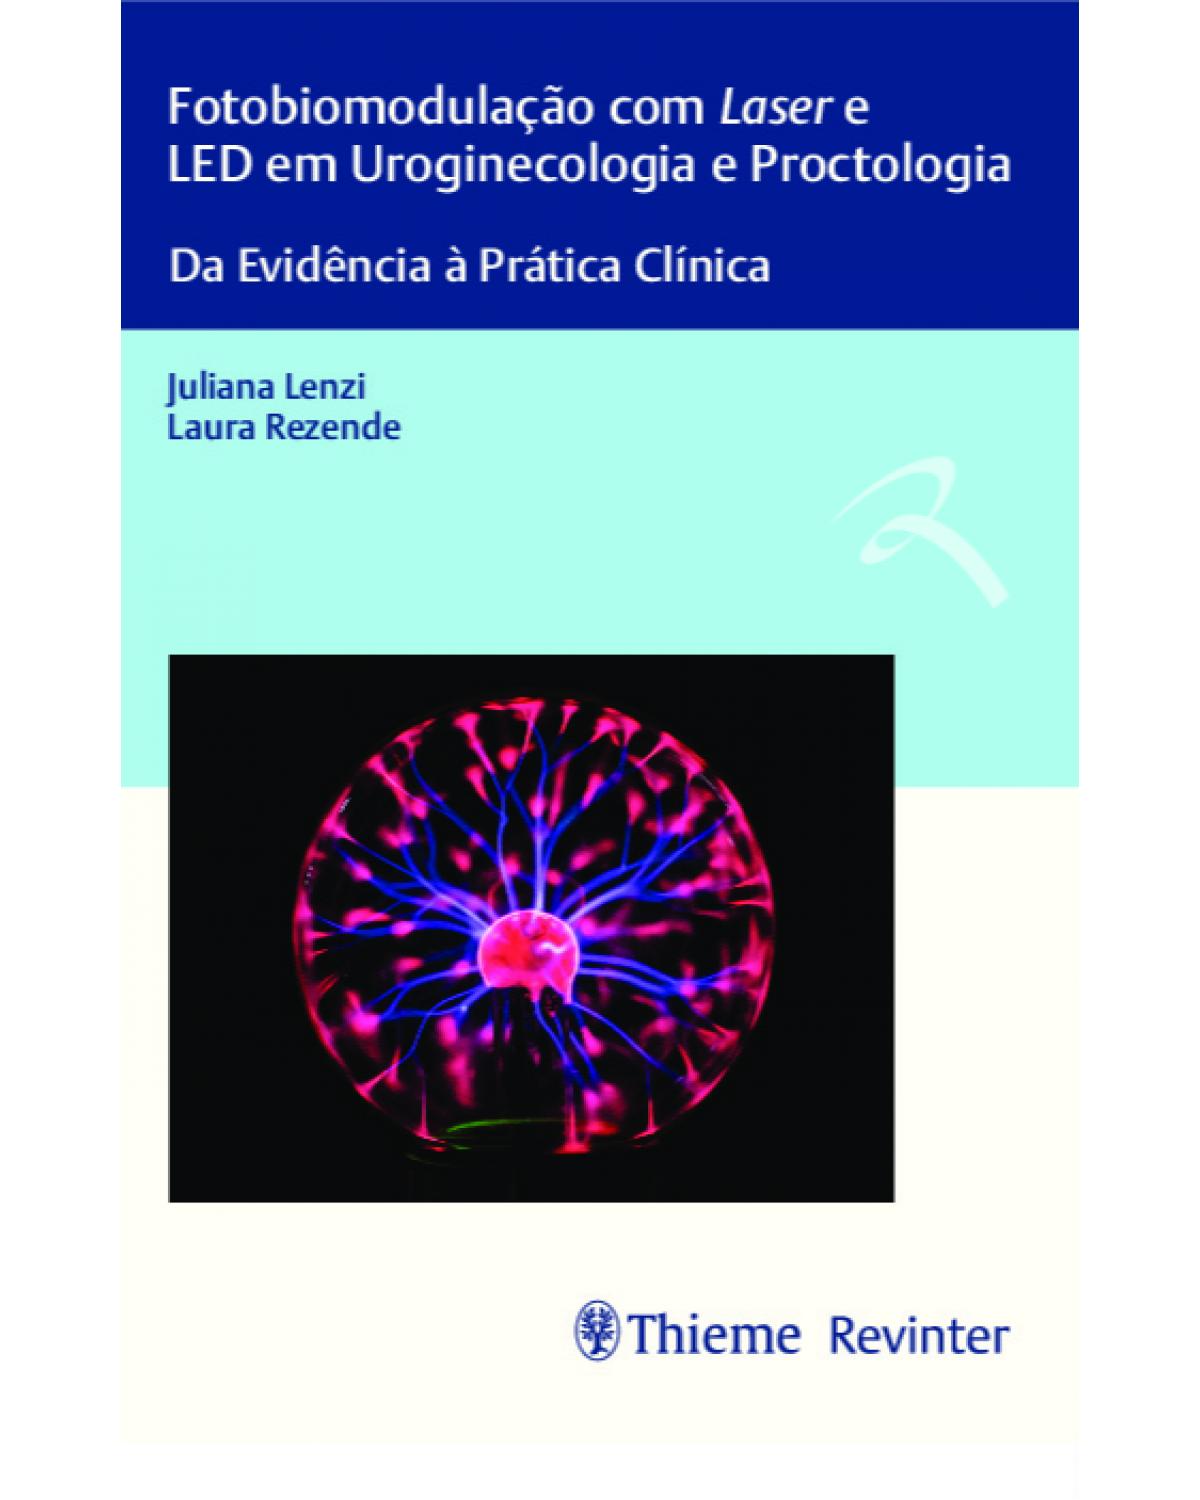 Fotobiomodulação com Laser e LED em uroginecologia e proctologia - da evidência à prática clínica - 1ª Edição | 2021